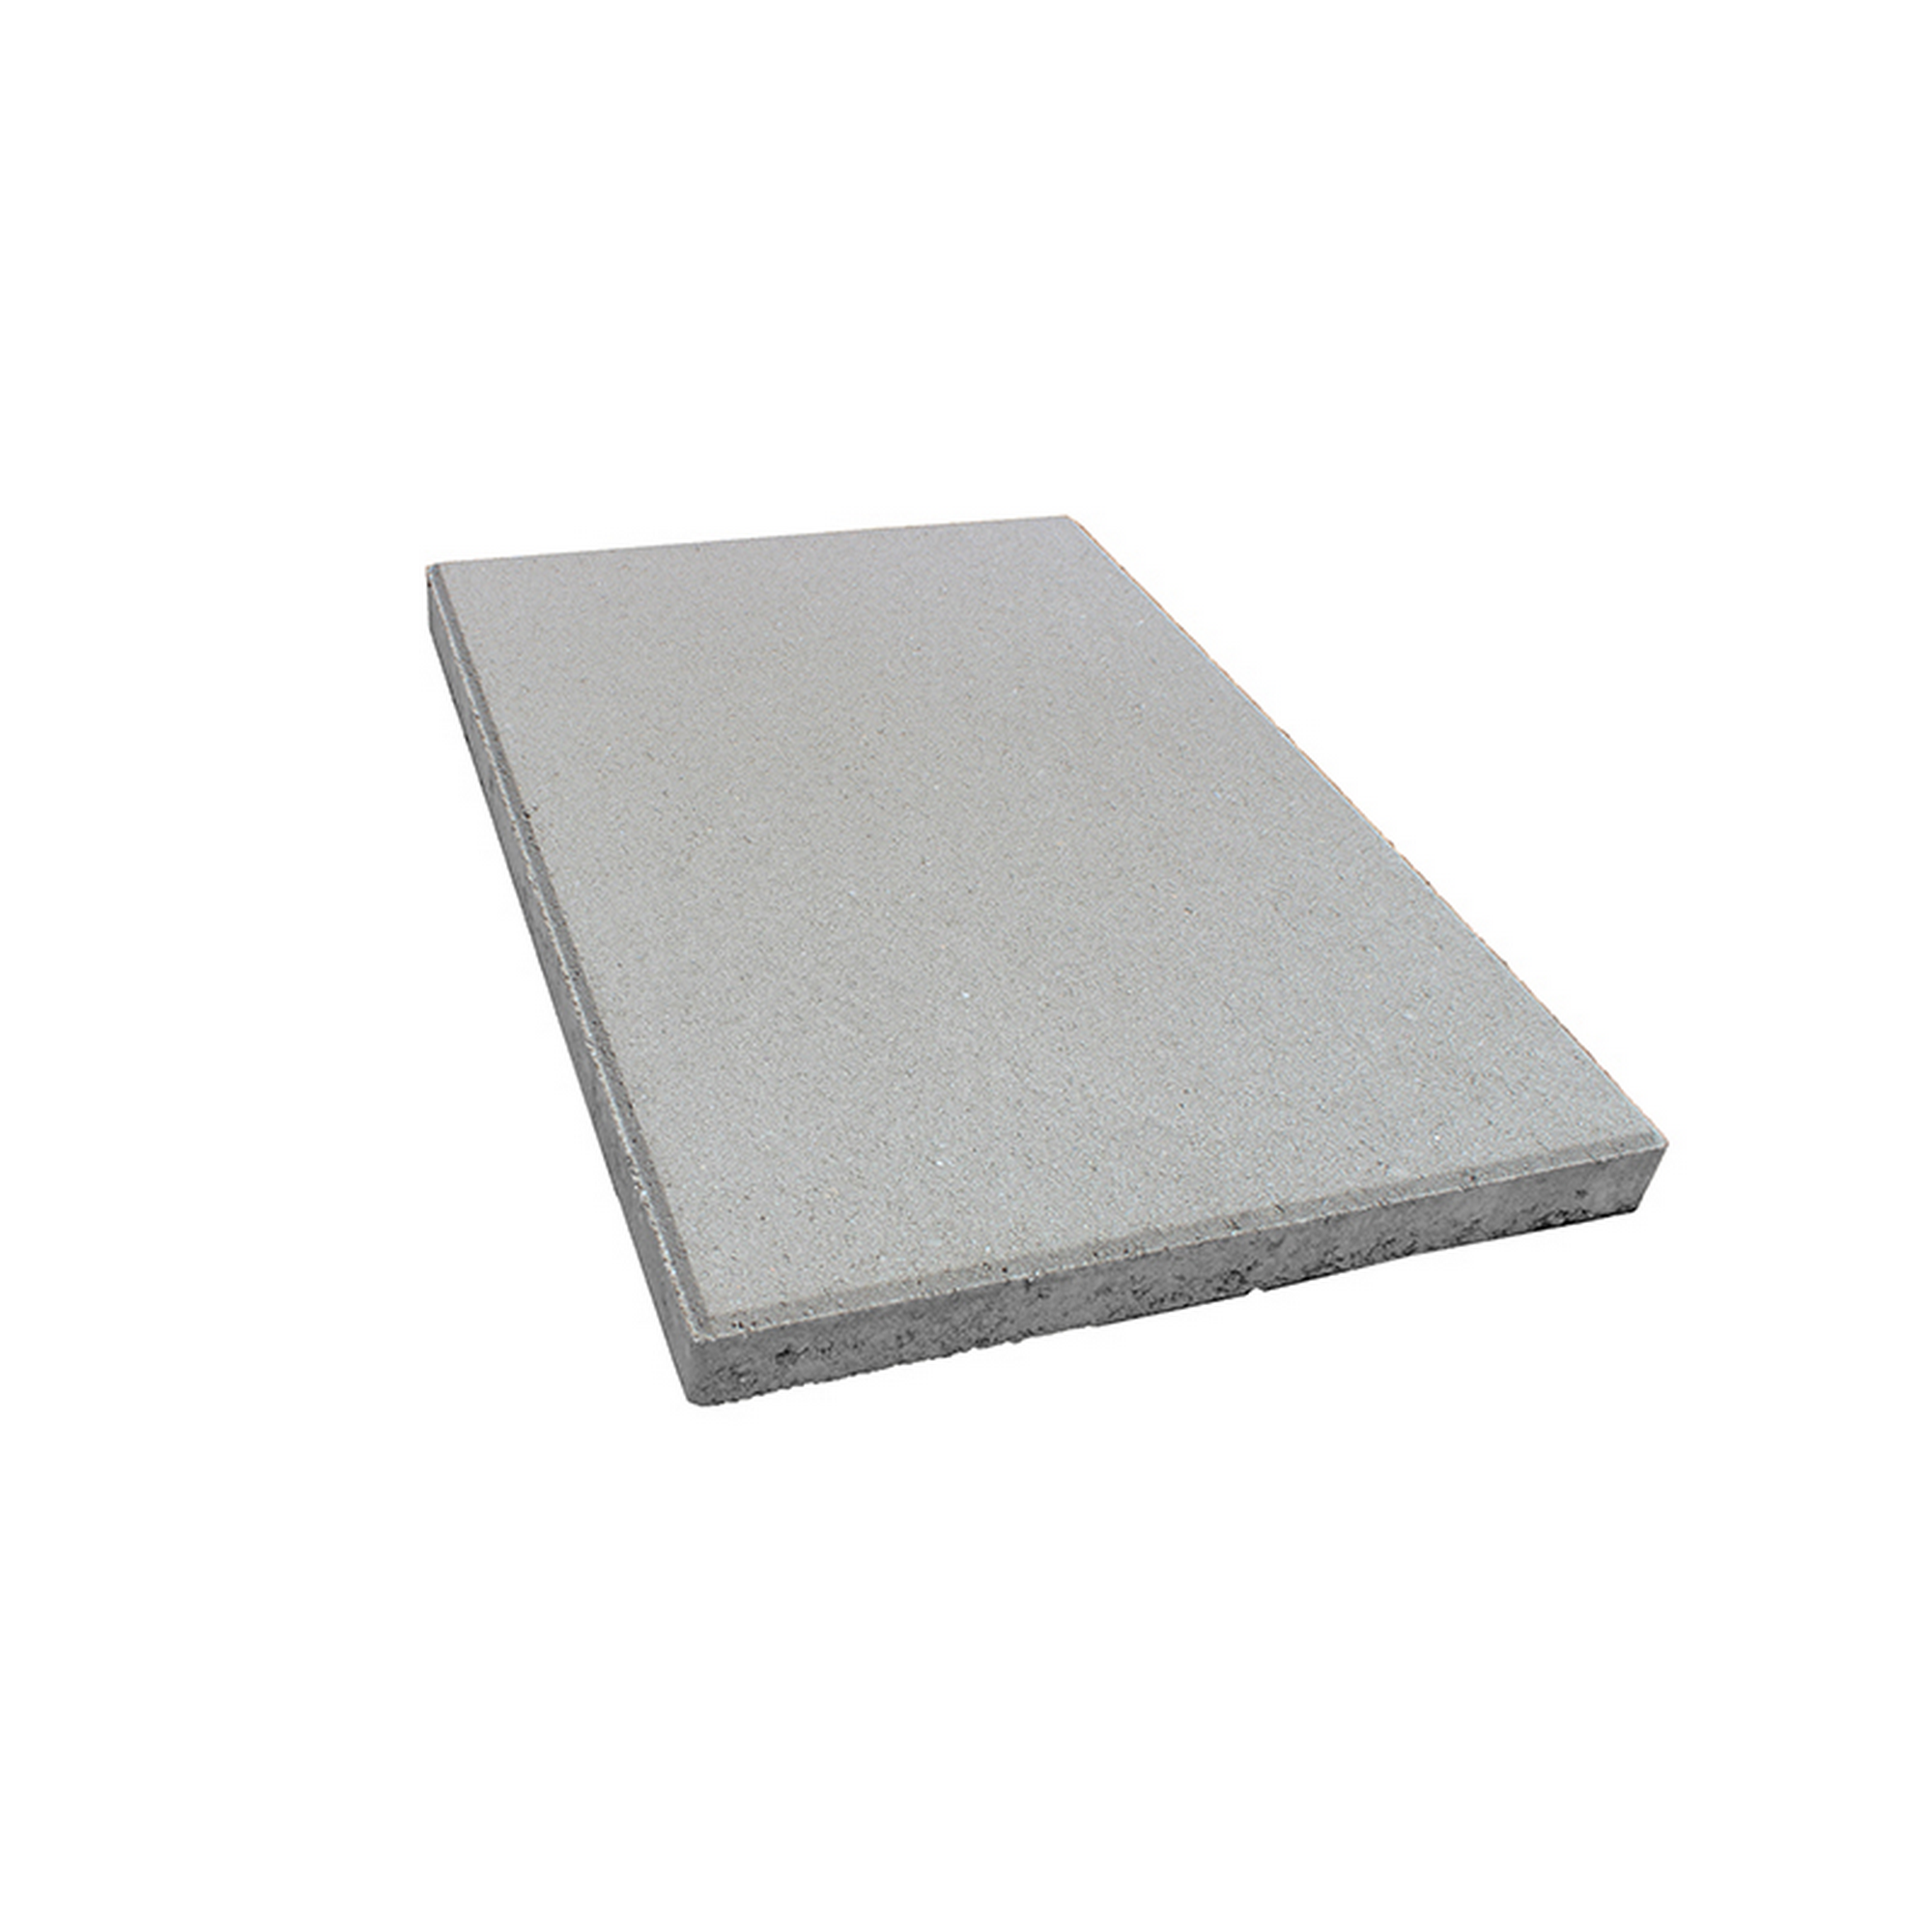 Betonplatte grau 60 x 40 x 4 cm